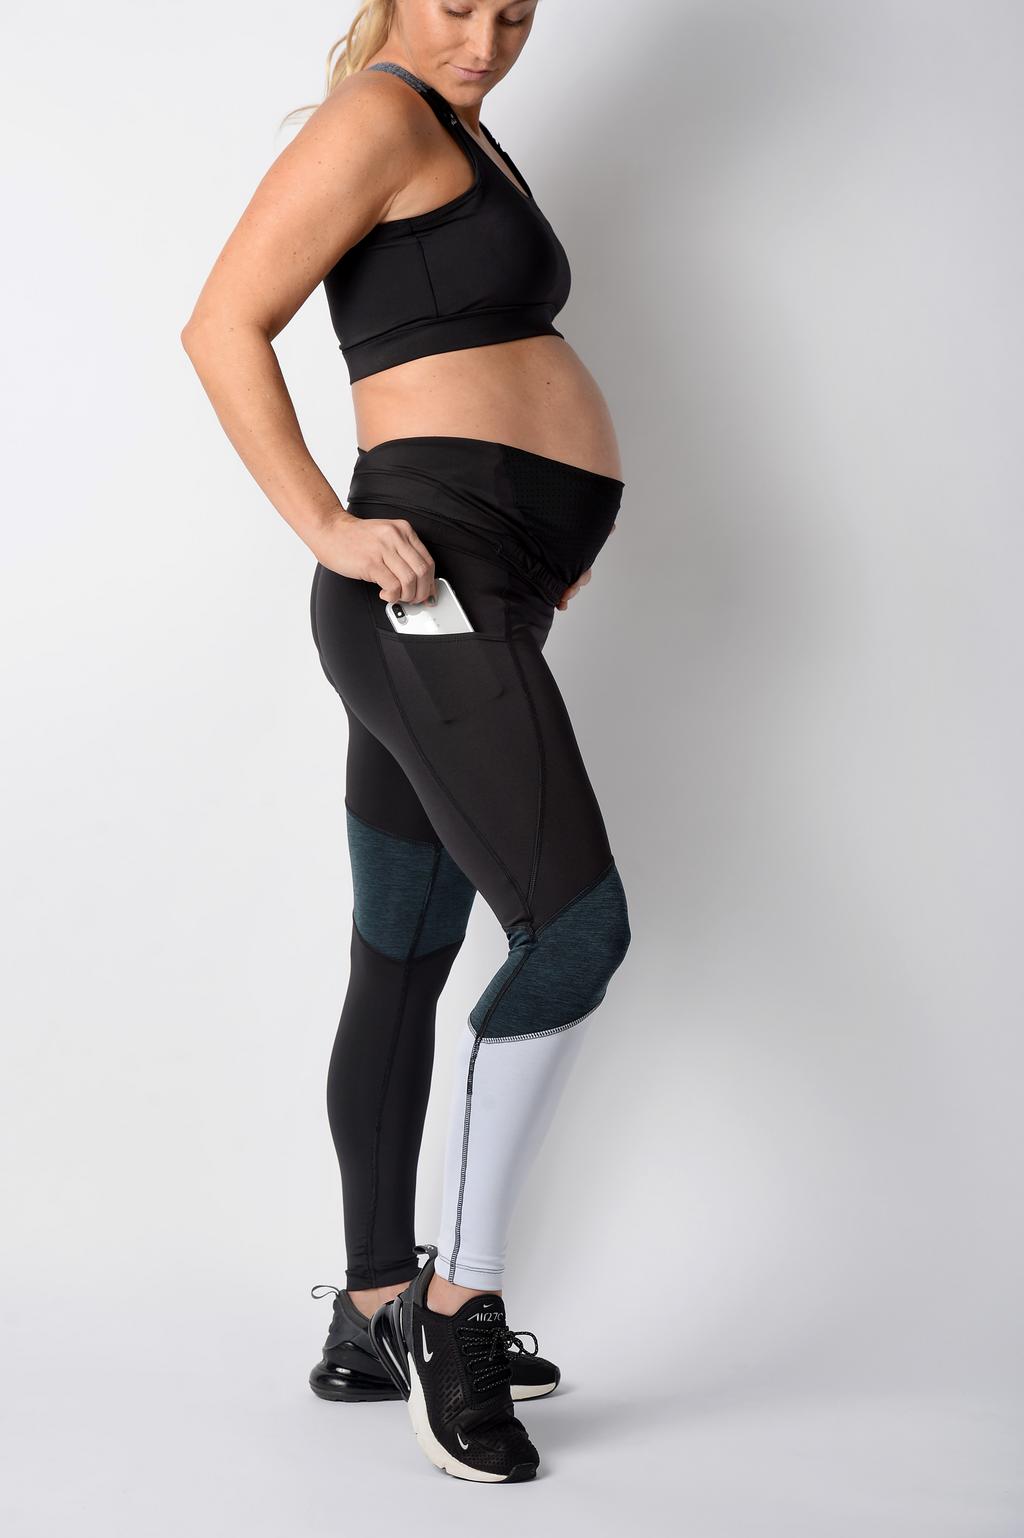 FAQ – duoFIT Maternity Activewear